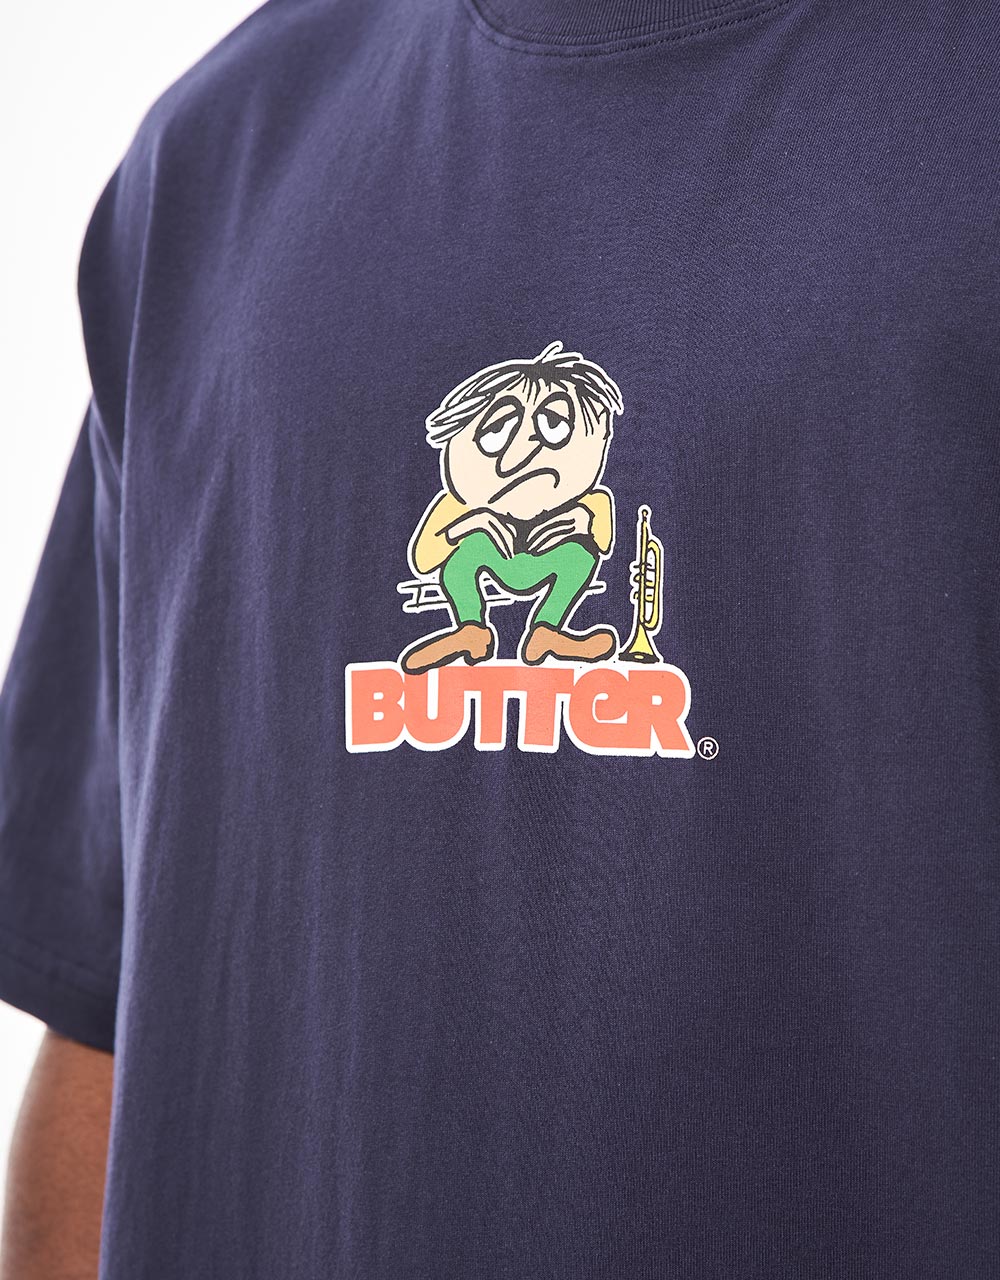 Butter Goods Blues Logo T-Shirt - Navy